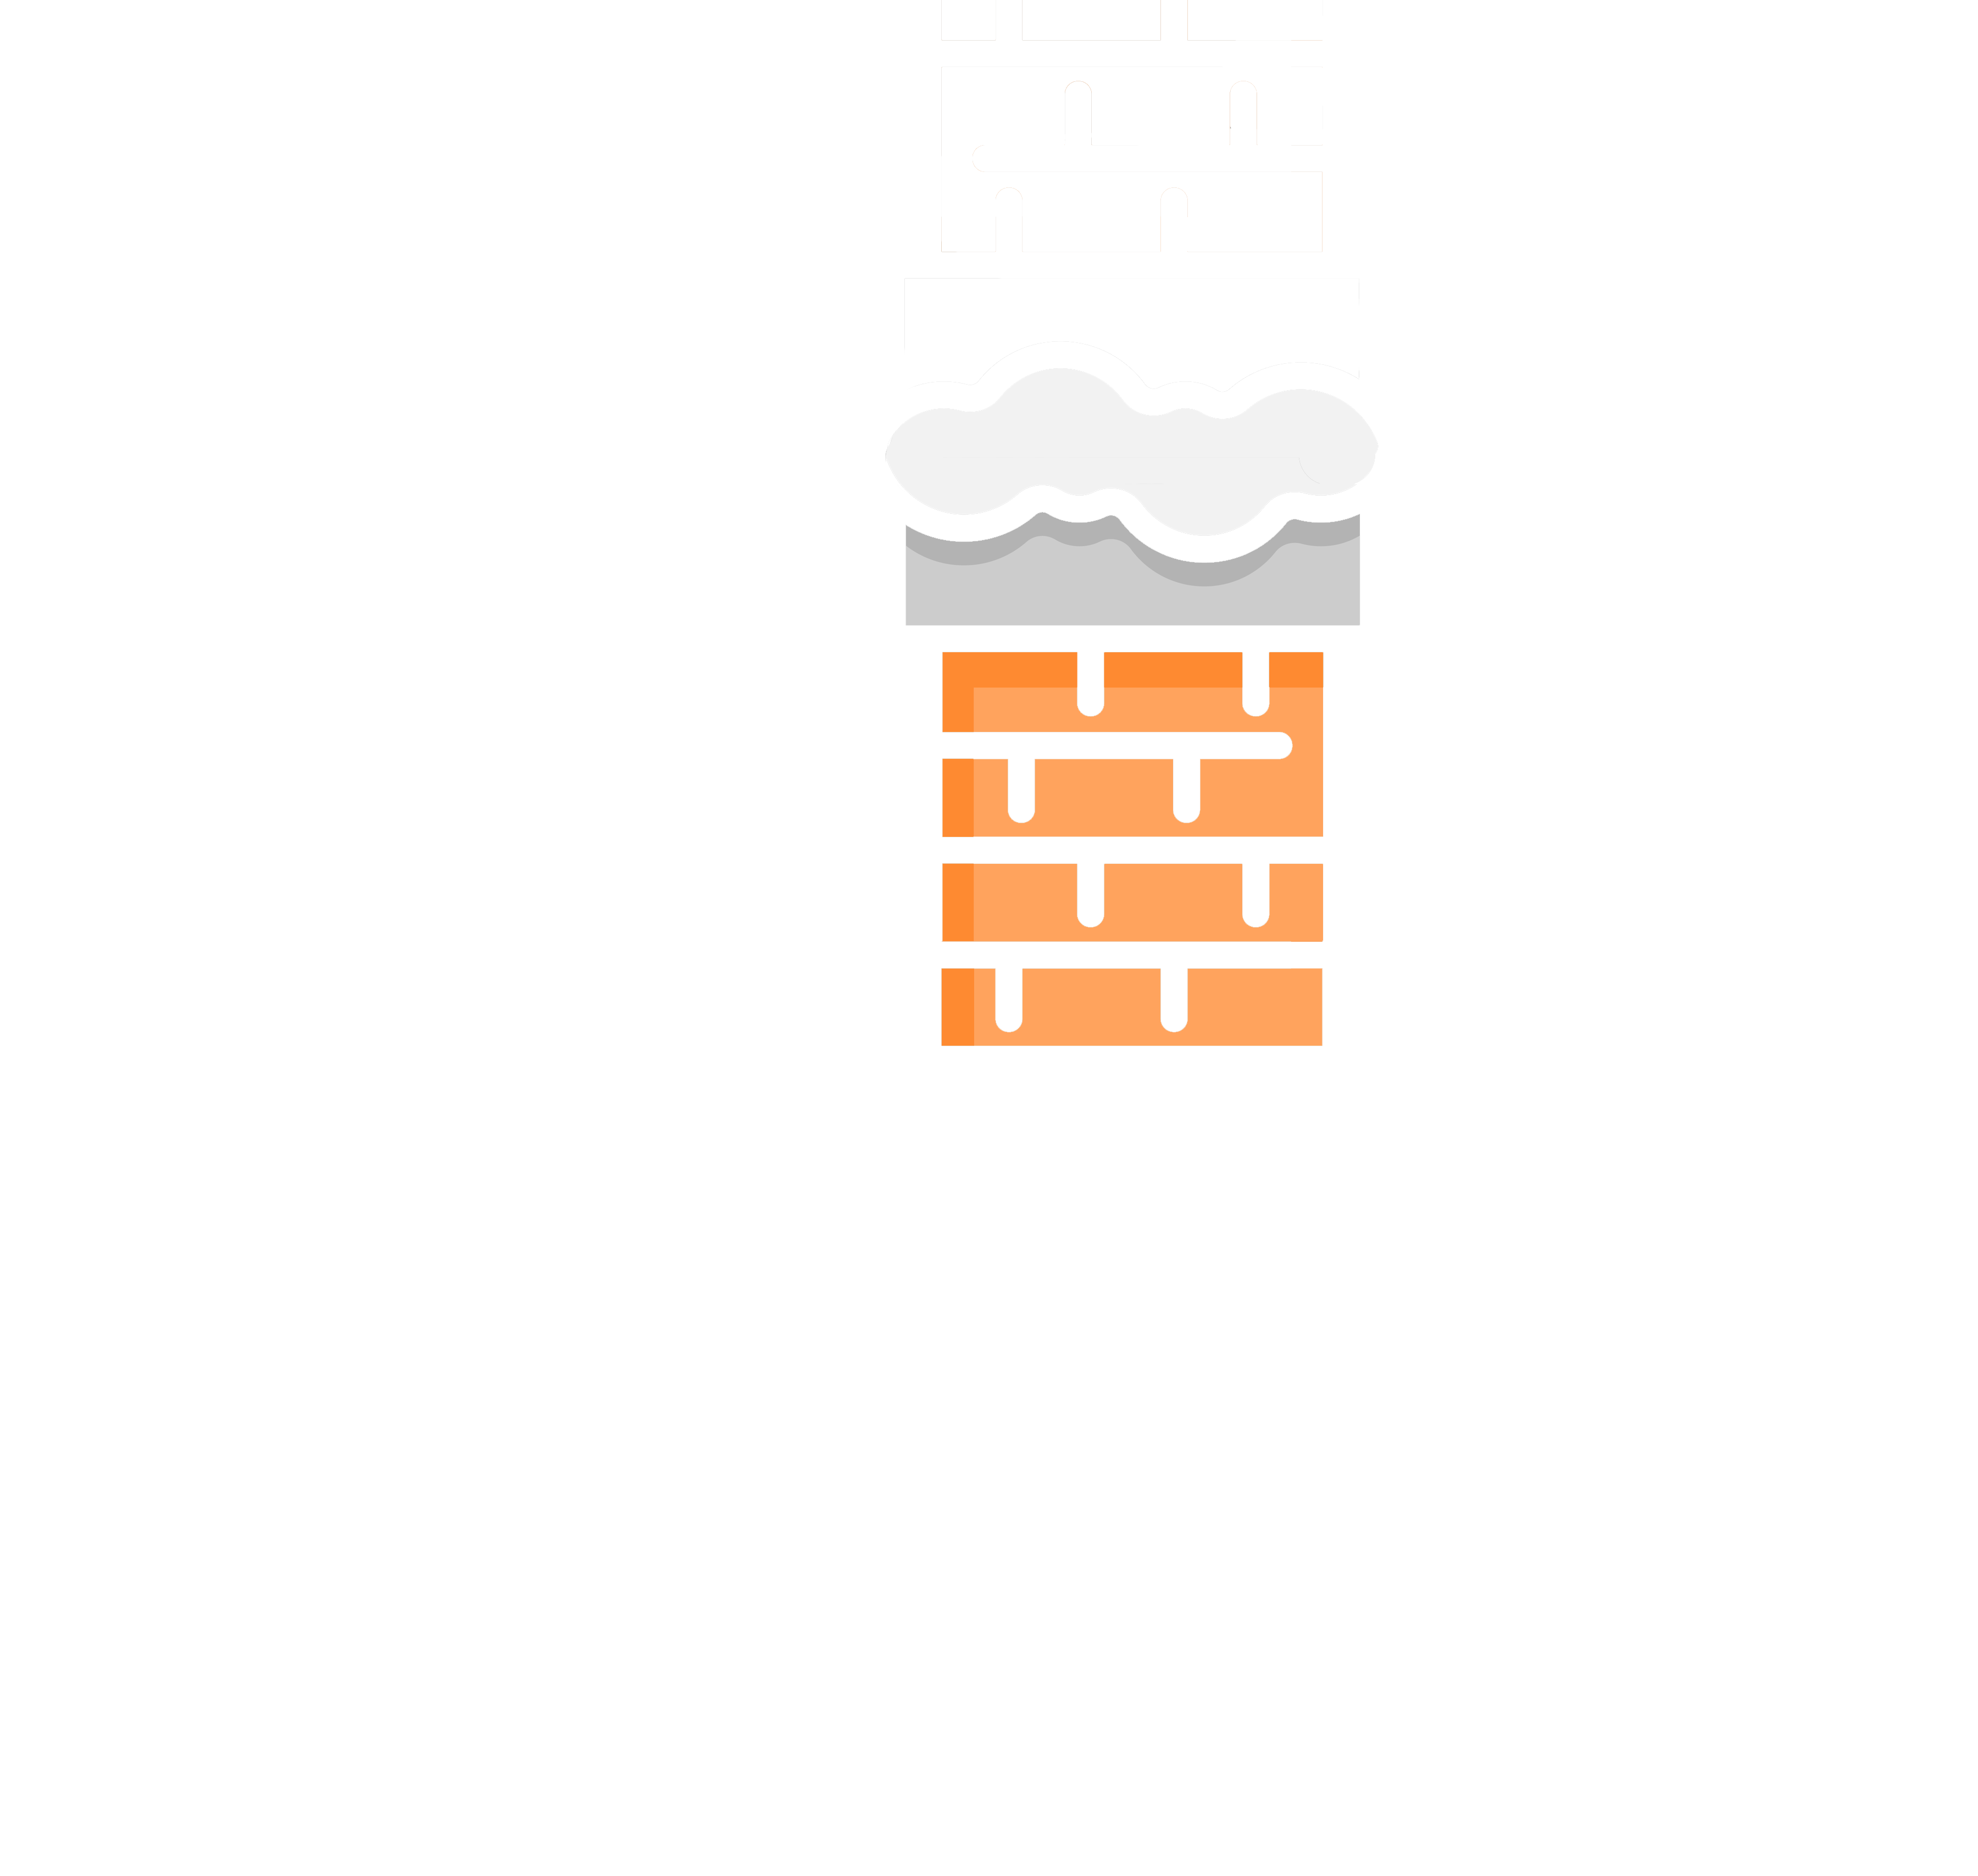 Jet Ramonage